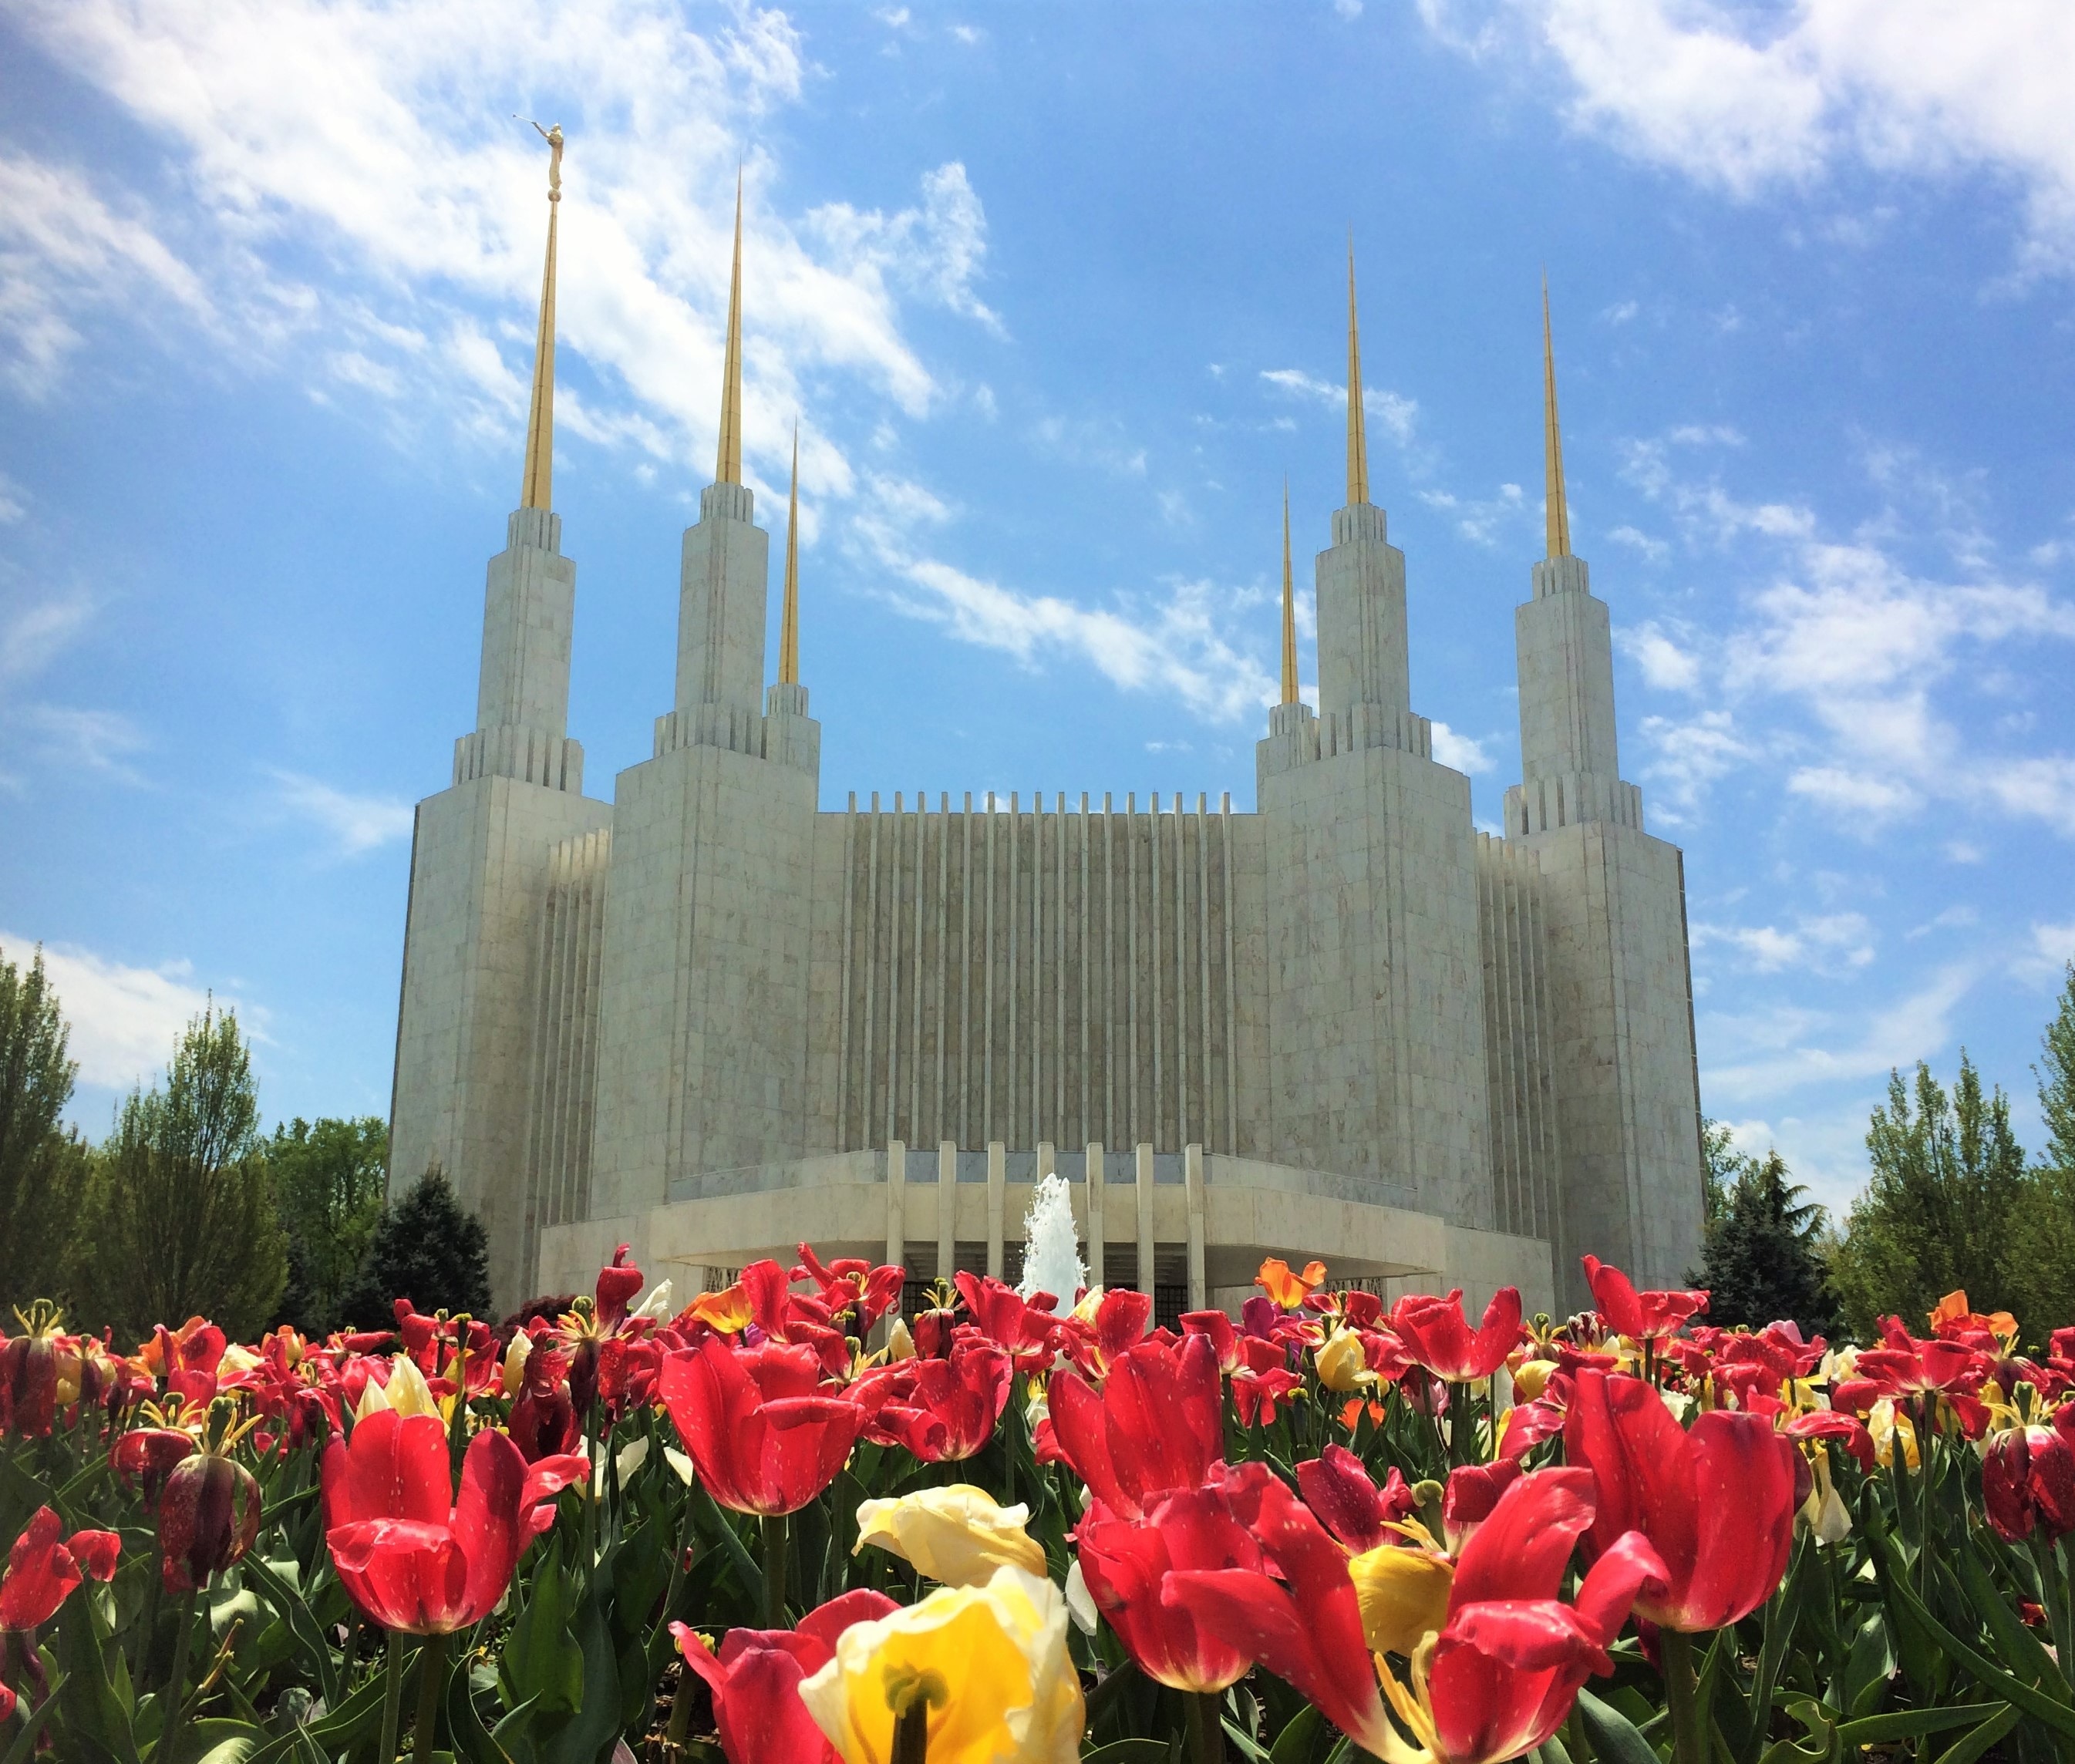 Temple, Lds, Latter-Day, Saints, Mormon, architecture, cloud - sky